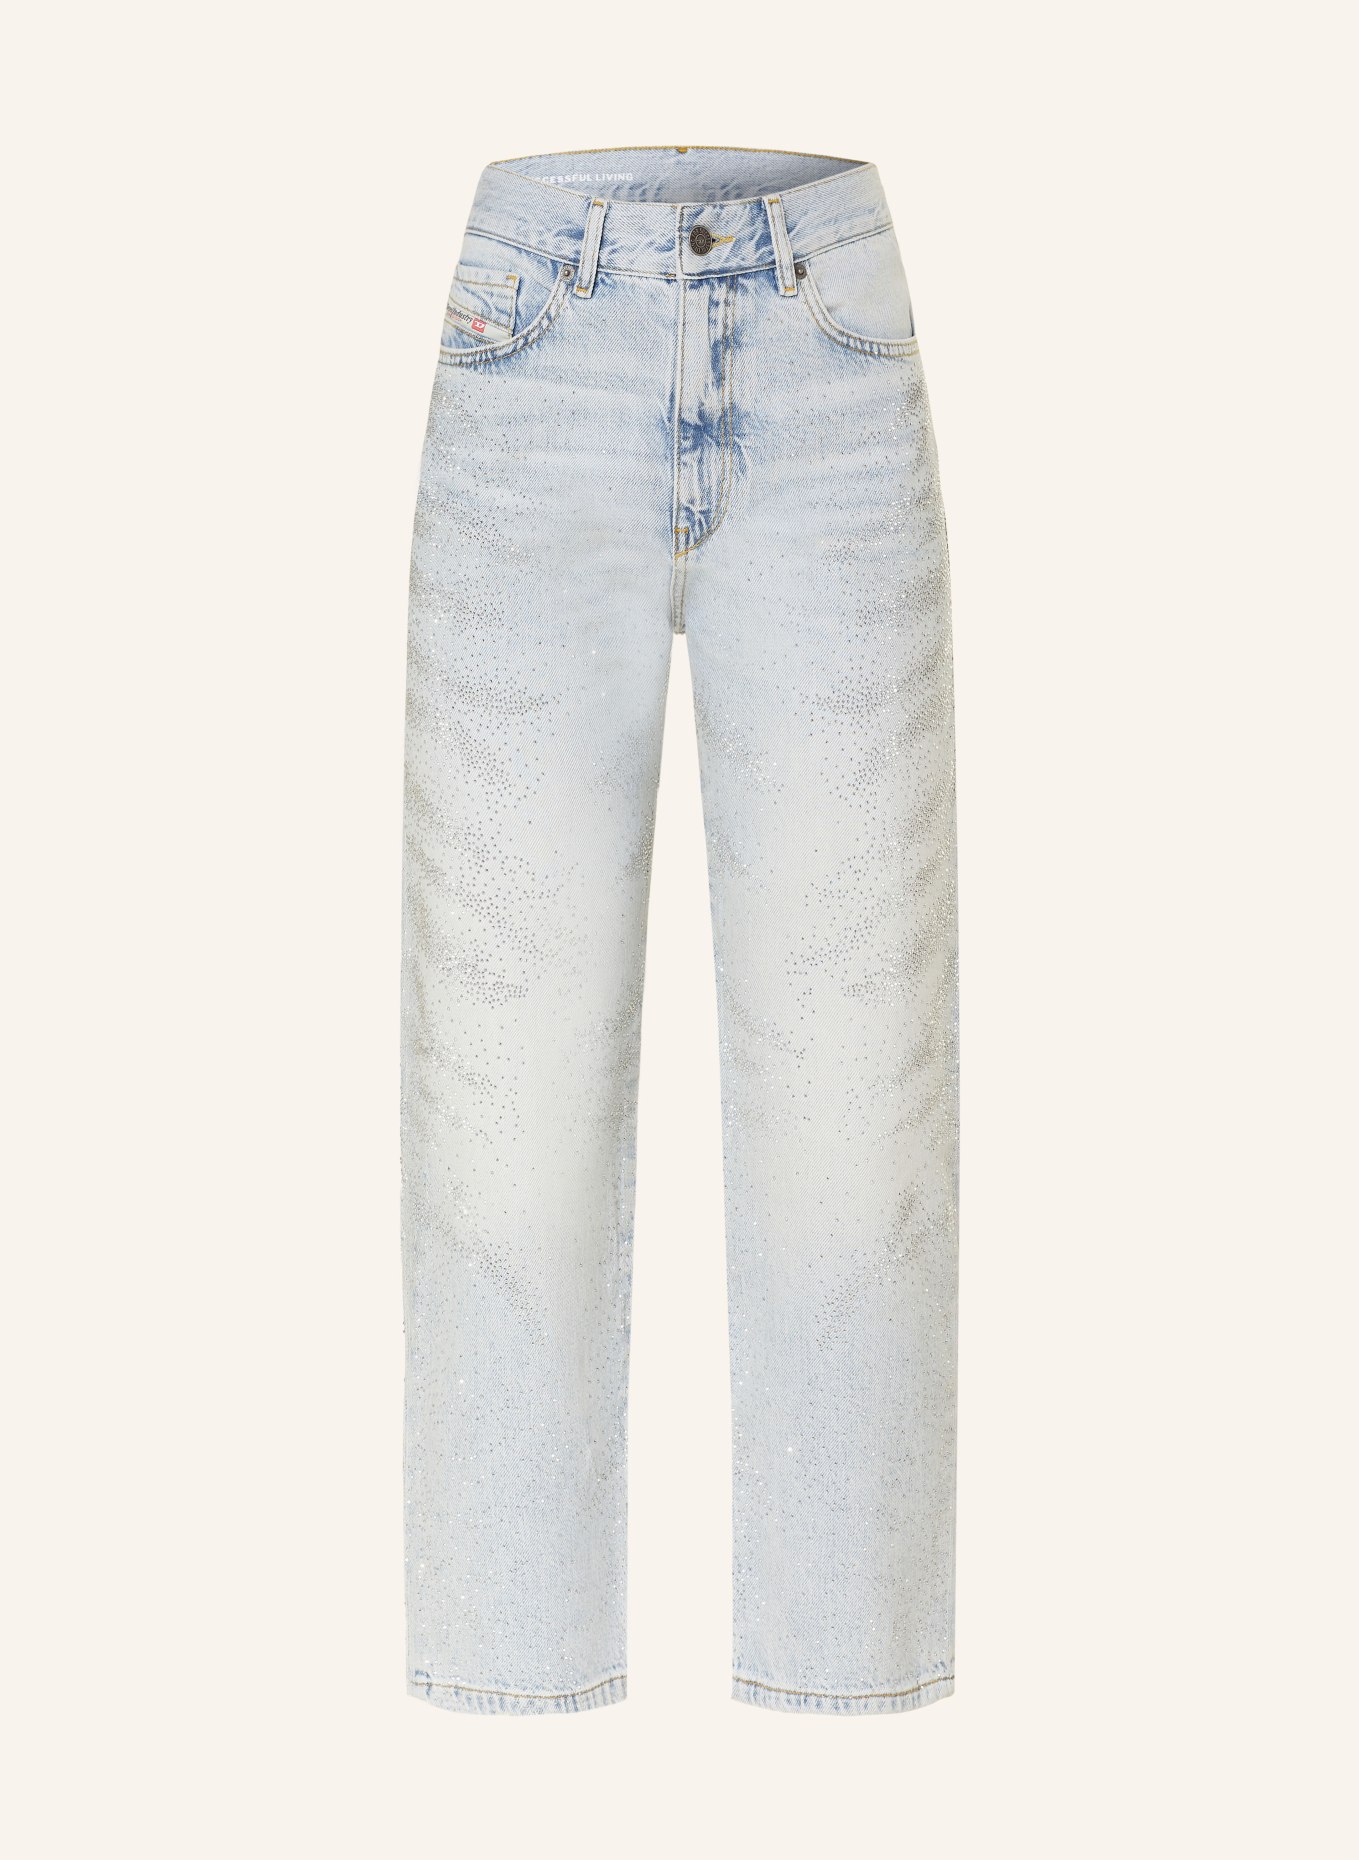 DIESEL Jeans 2016 D-AIR-S2 mit Schmucksteinen, Farbe: 01 LIGTH BLUE (Bild 1)